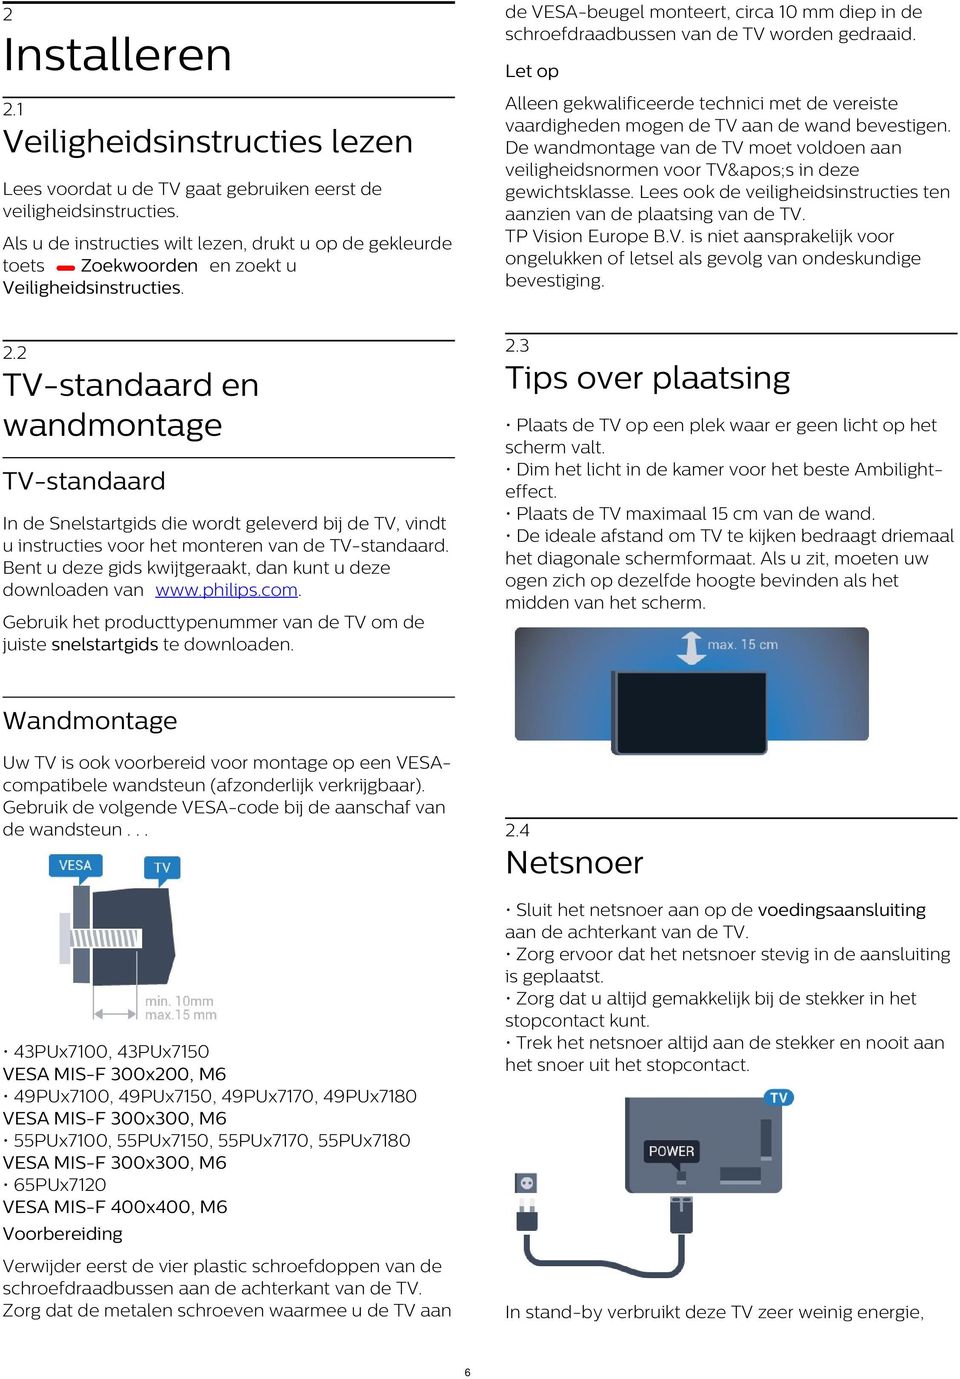 Alleen gekwalificeerde technici met de vereiste vaardigheden mogen de TV aan de wand bevestigen. De wandmontage van de TV moet voldoen aan veiligheidsnormen voor TV&apos;s in deze gewichtsklasse.